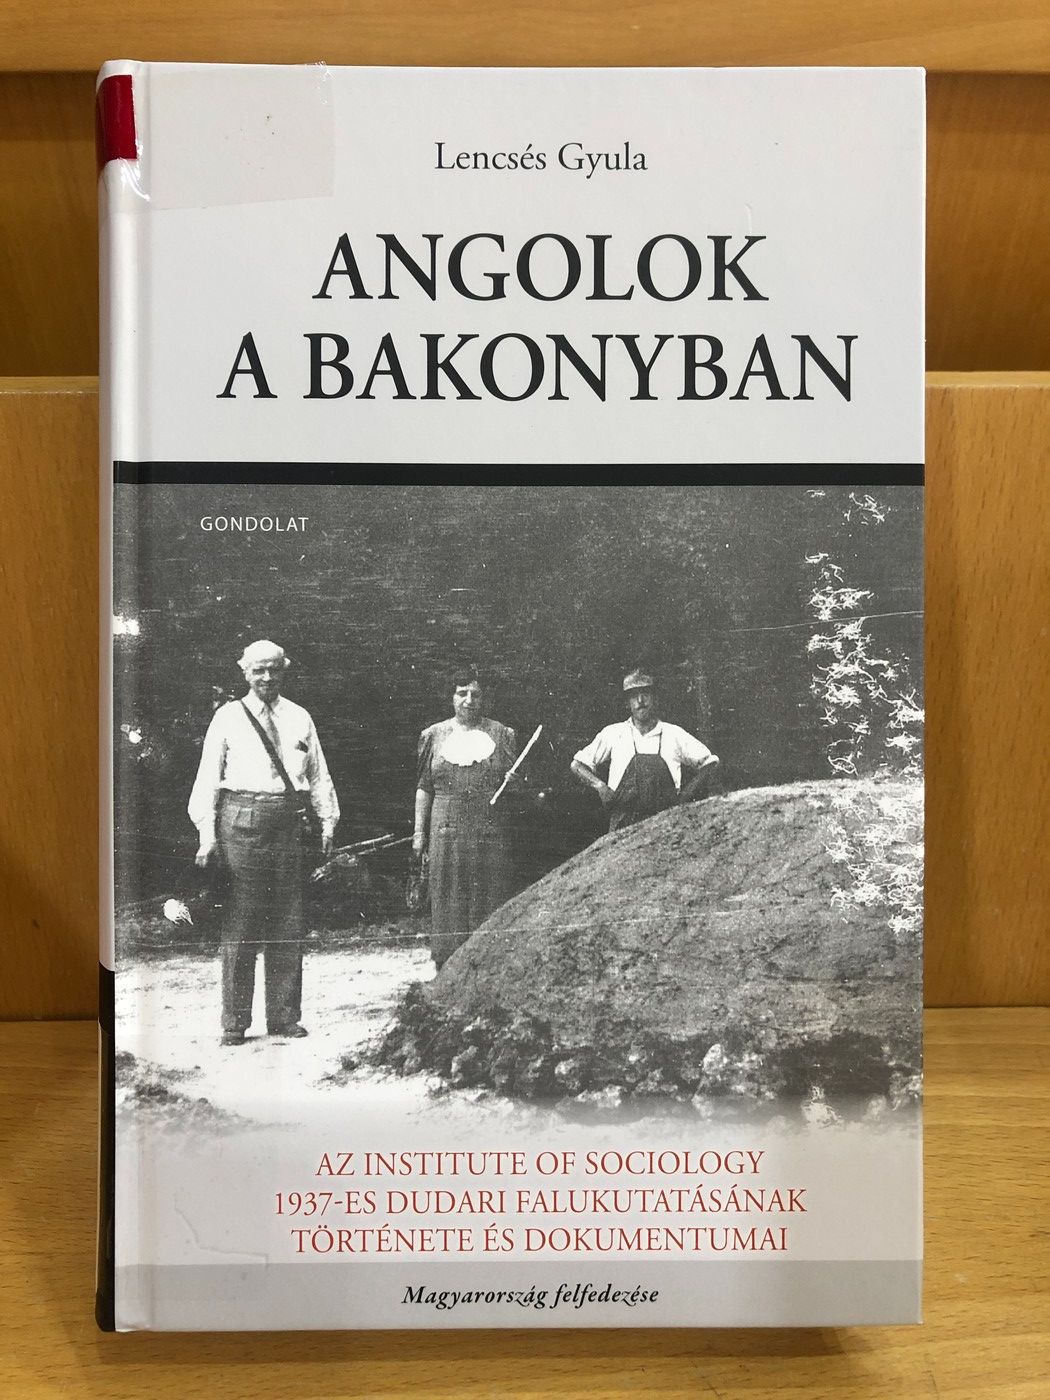 Lencsés Gyula Angolok a Bakonyban című könyve